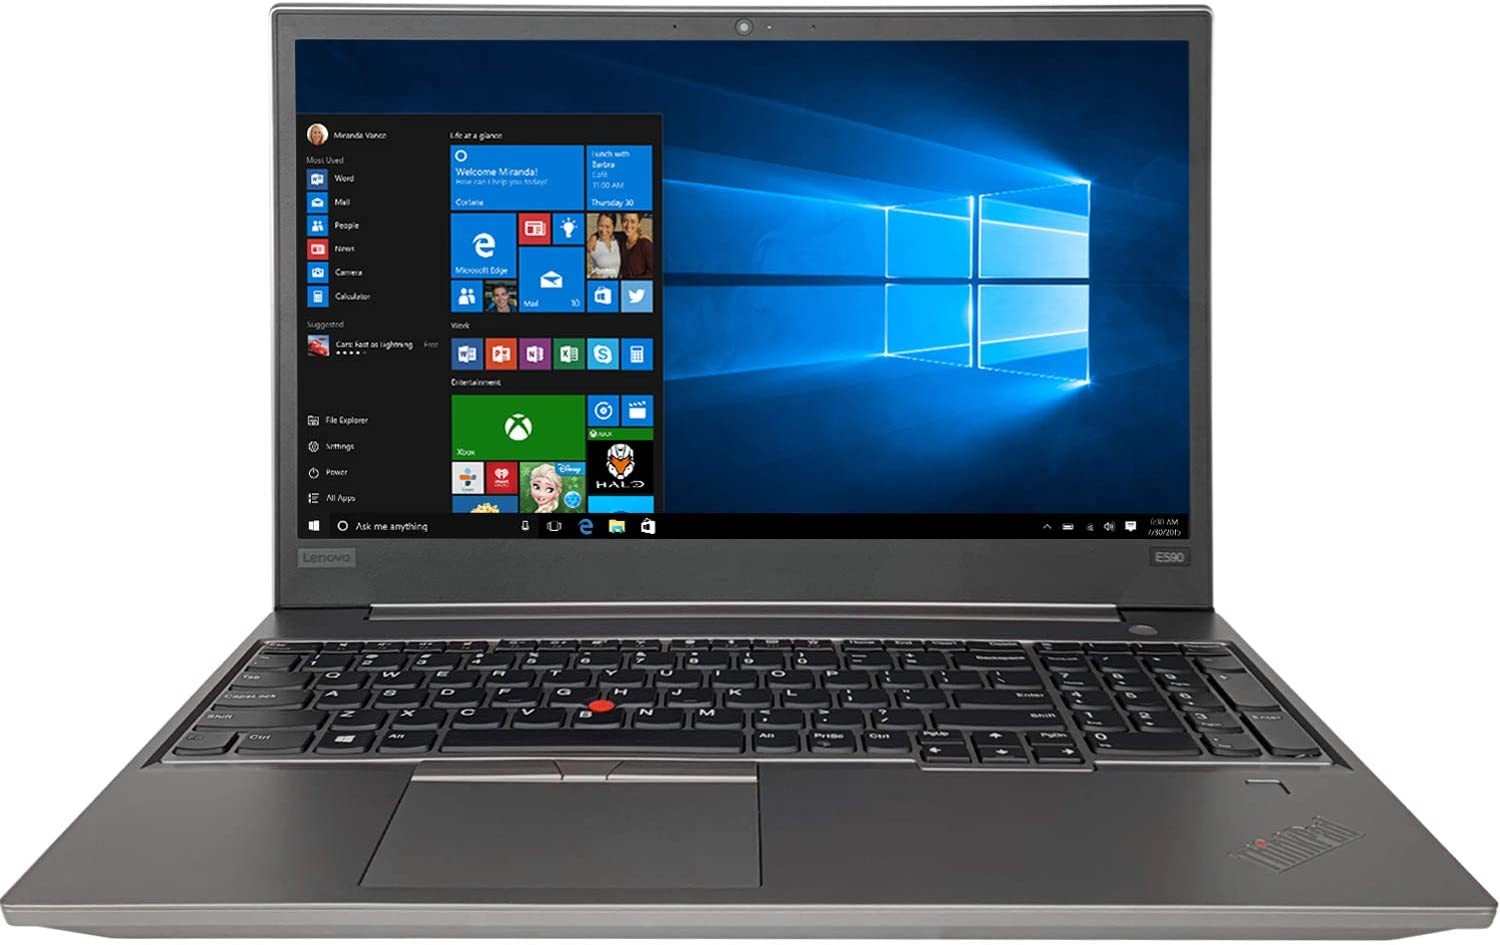 Lenovo ThinkPad E590 15.6" FHD i5-8265U 1.6GHz 8GB 1TB W10P Laptop 20NB005RUS